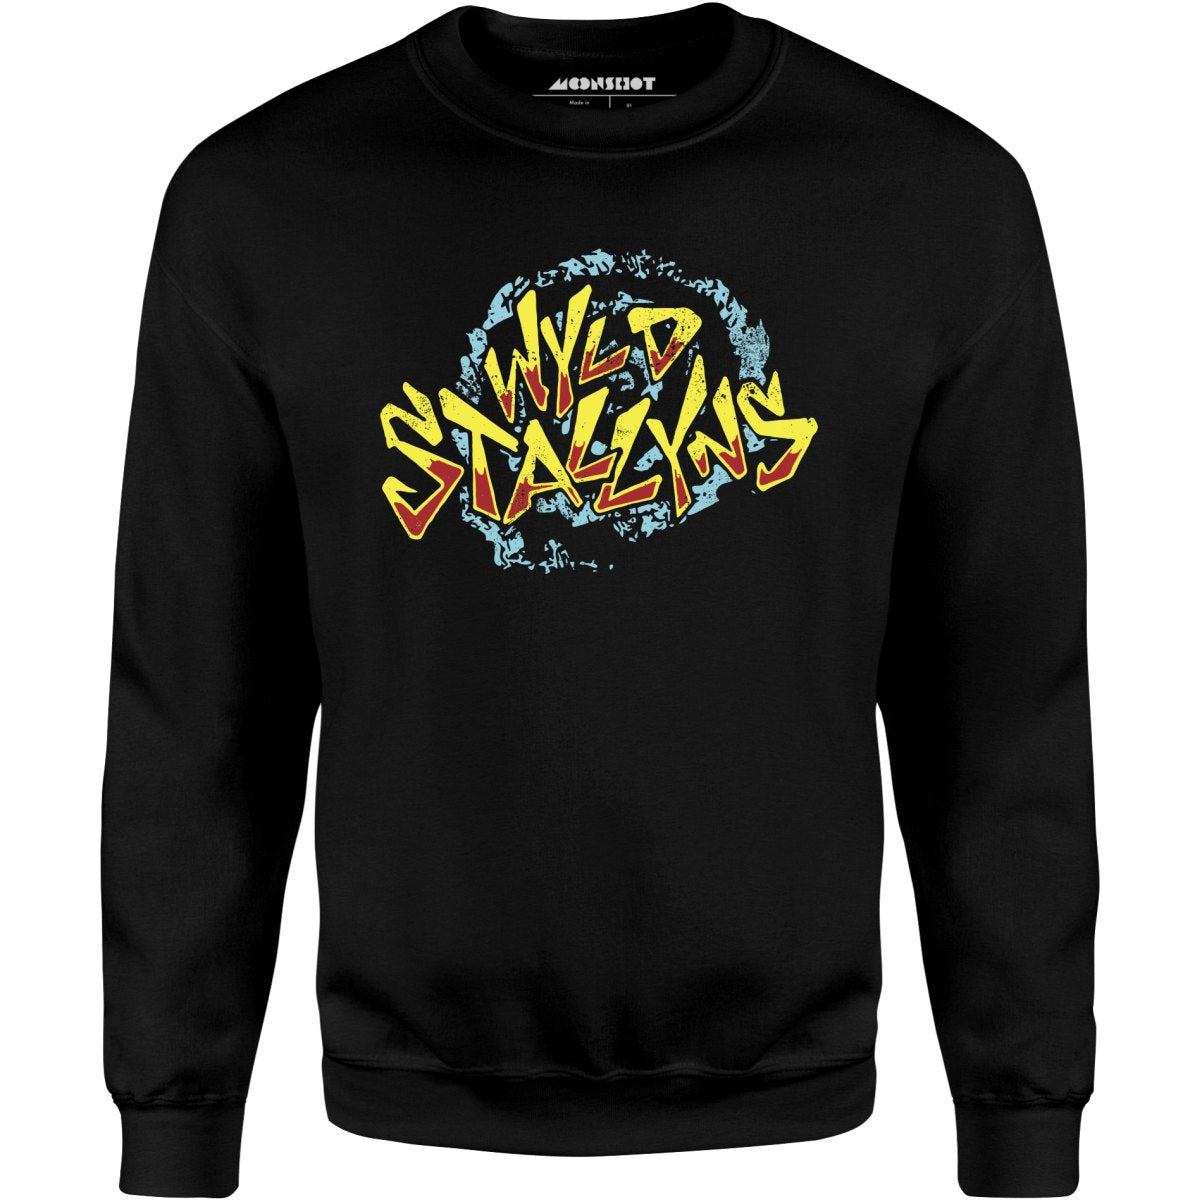 Wyld Stallyns - Unisex Sweatshirt